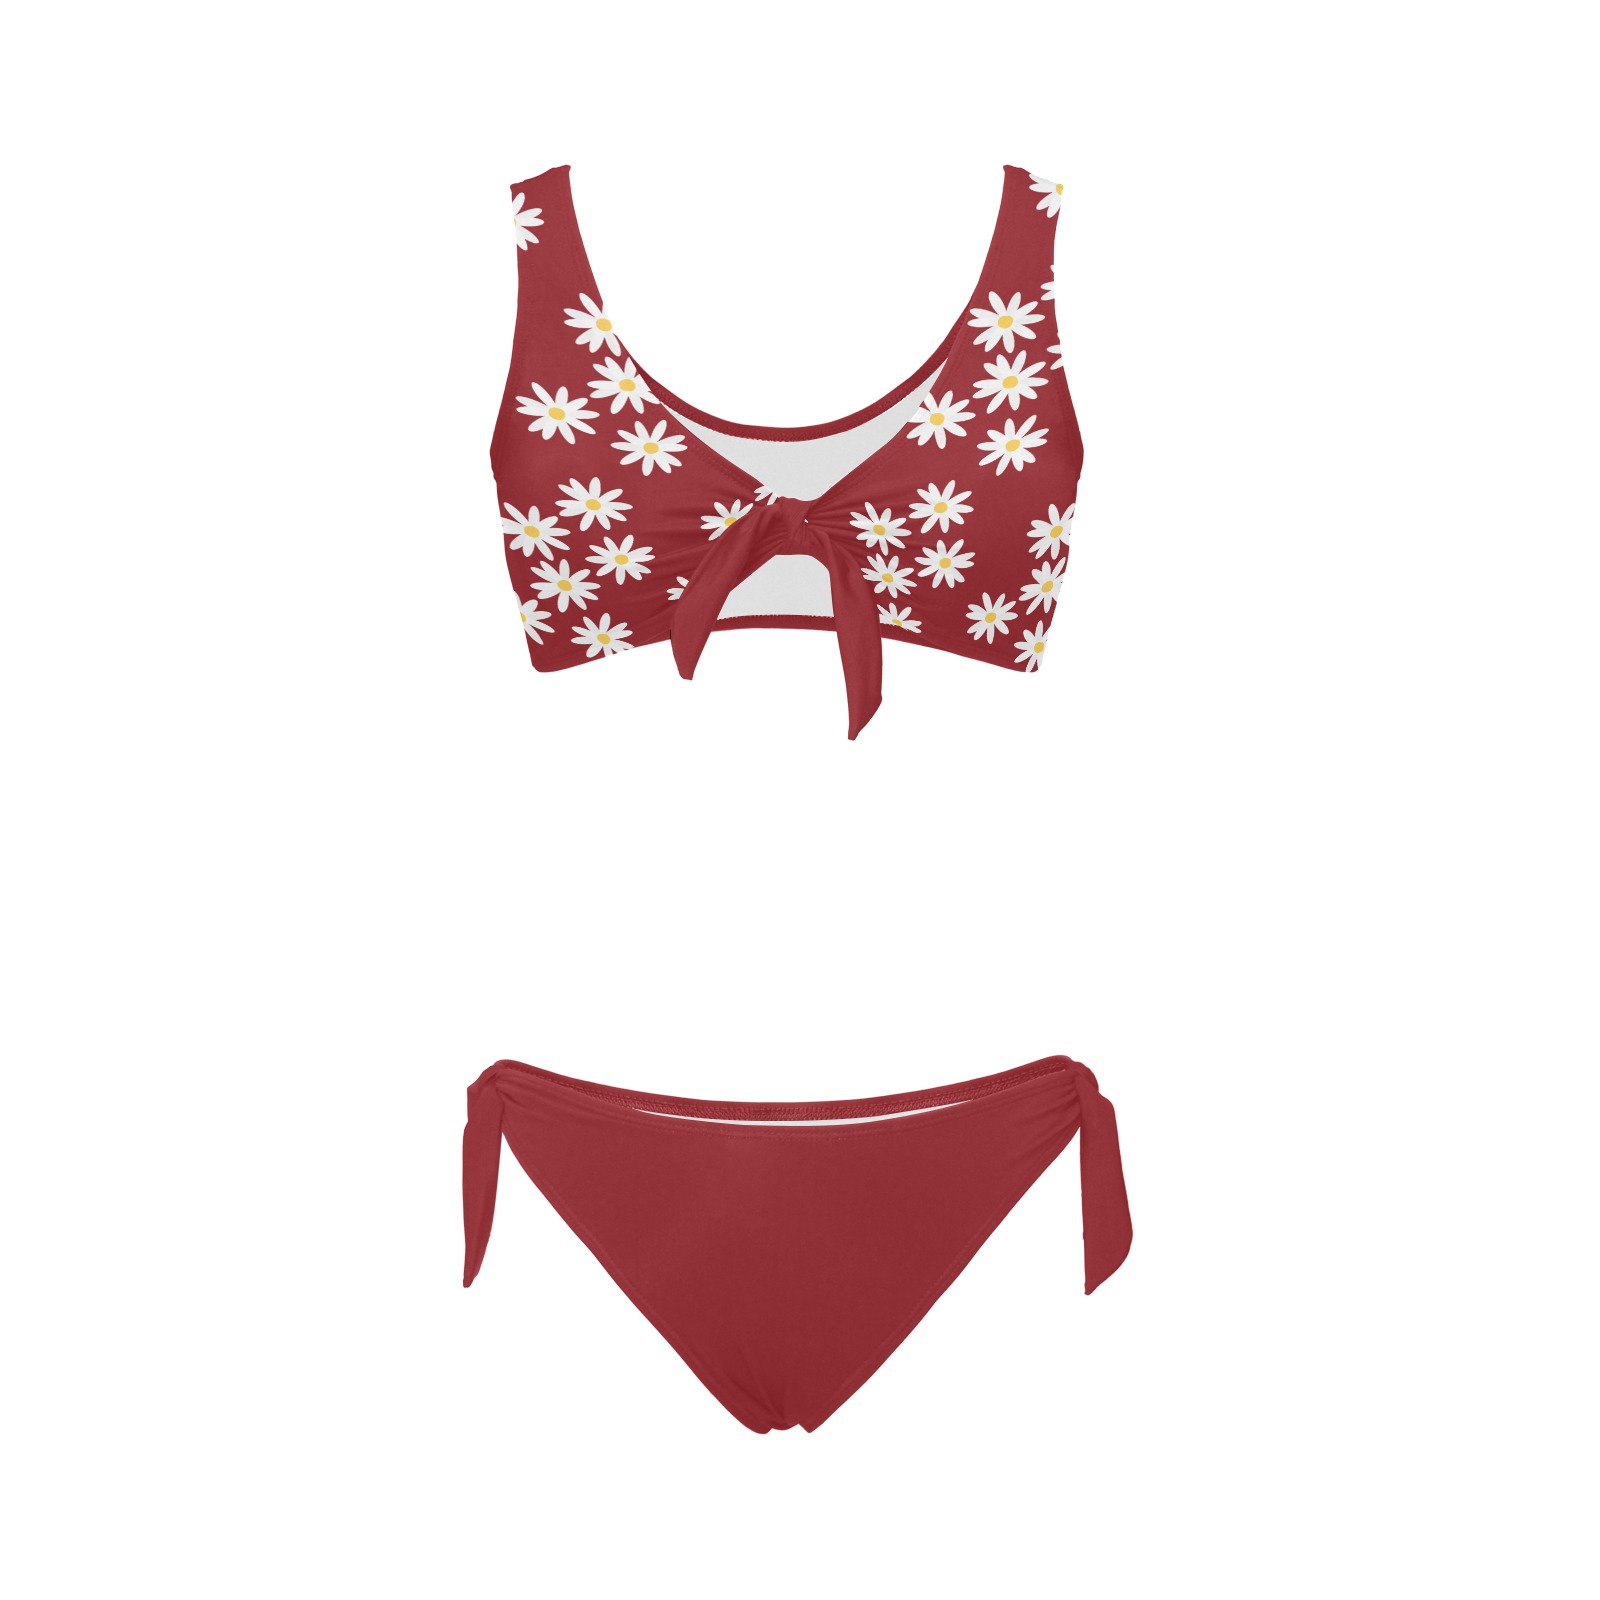 Daisy Woman's Swimwear Red Plain Bow Tie Front Bikini Swimsuit (Model S38)